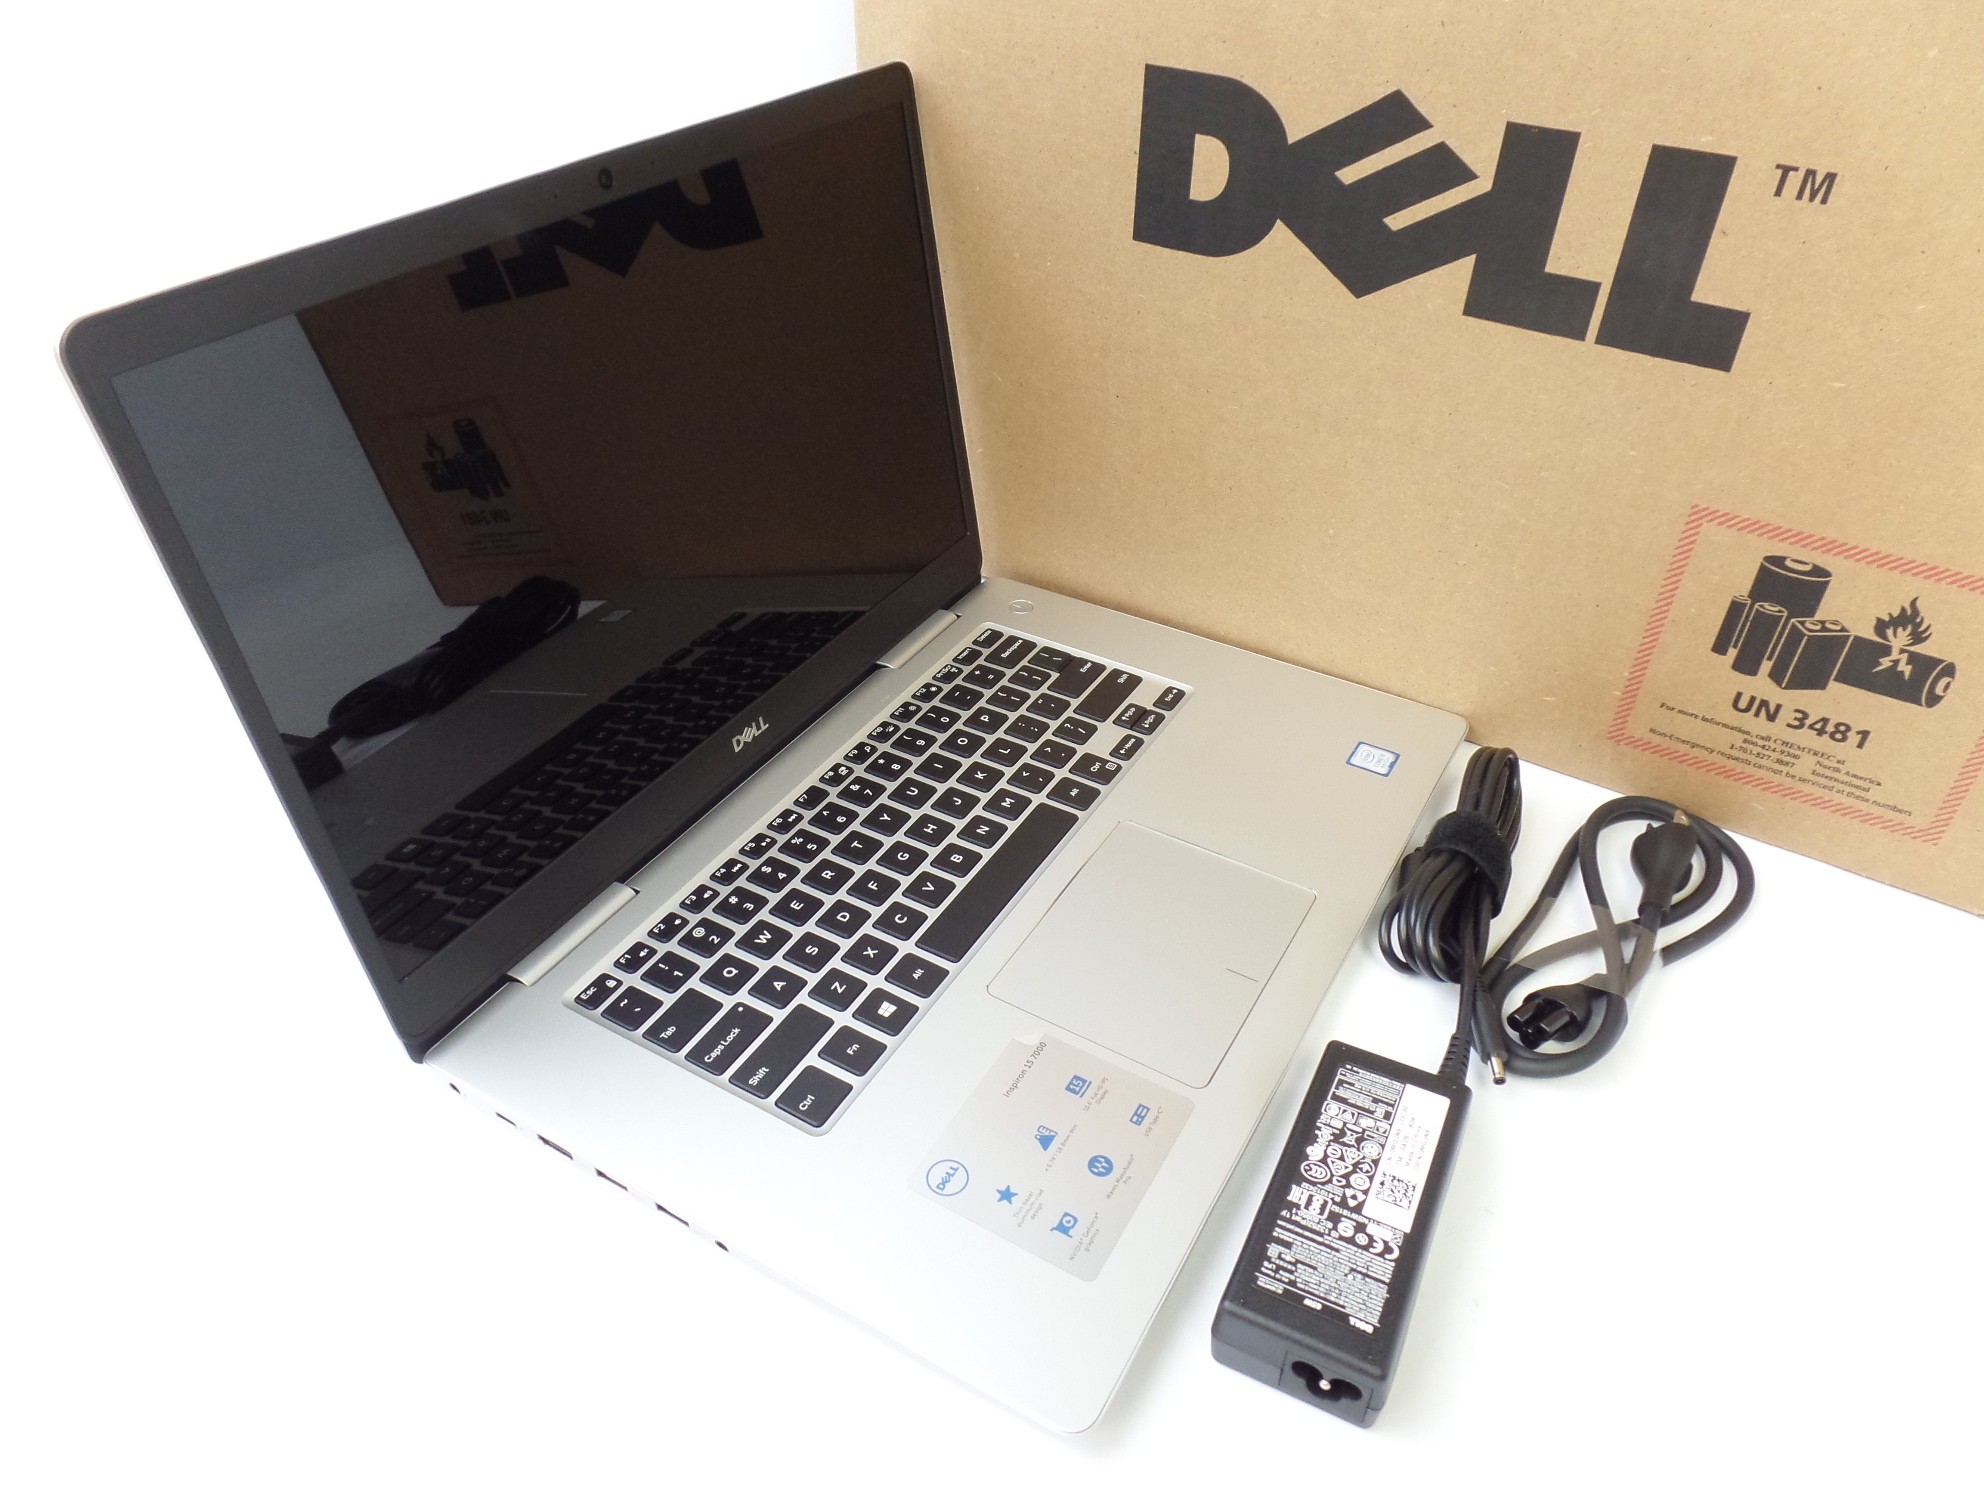 Dell Inspiron 7570 15.6" FHD 8th Gen i5-8250U 1.6GHz 8GB 1TB 940MX W10 Laptop OB